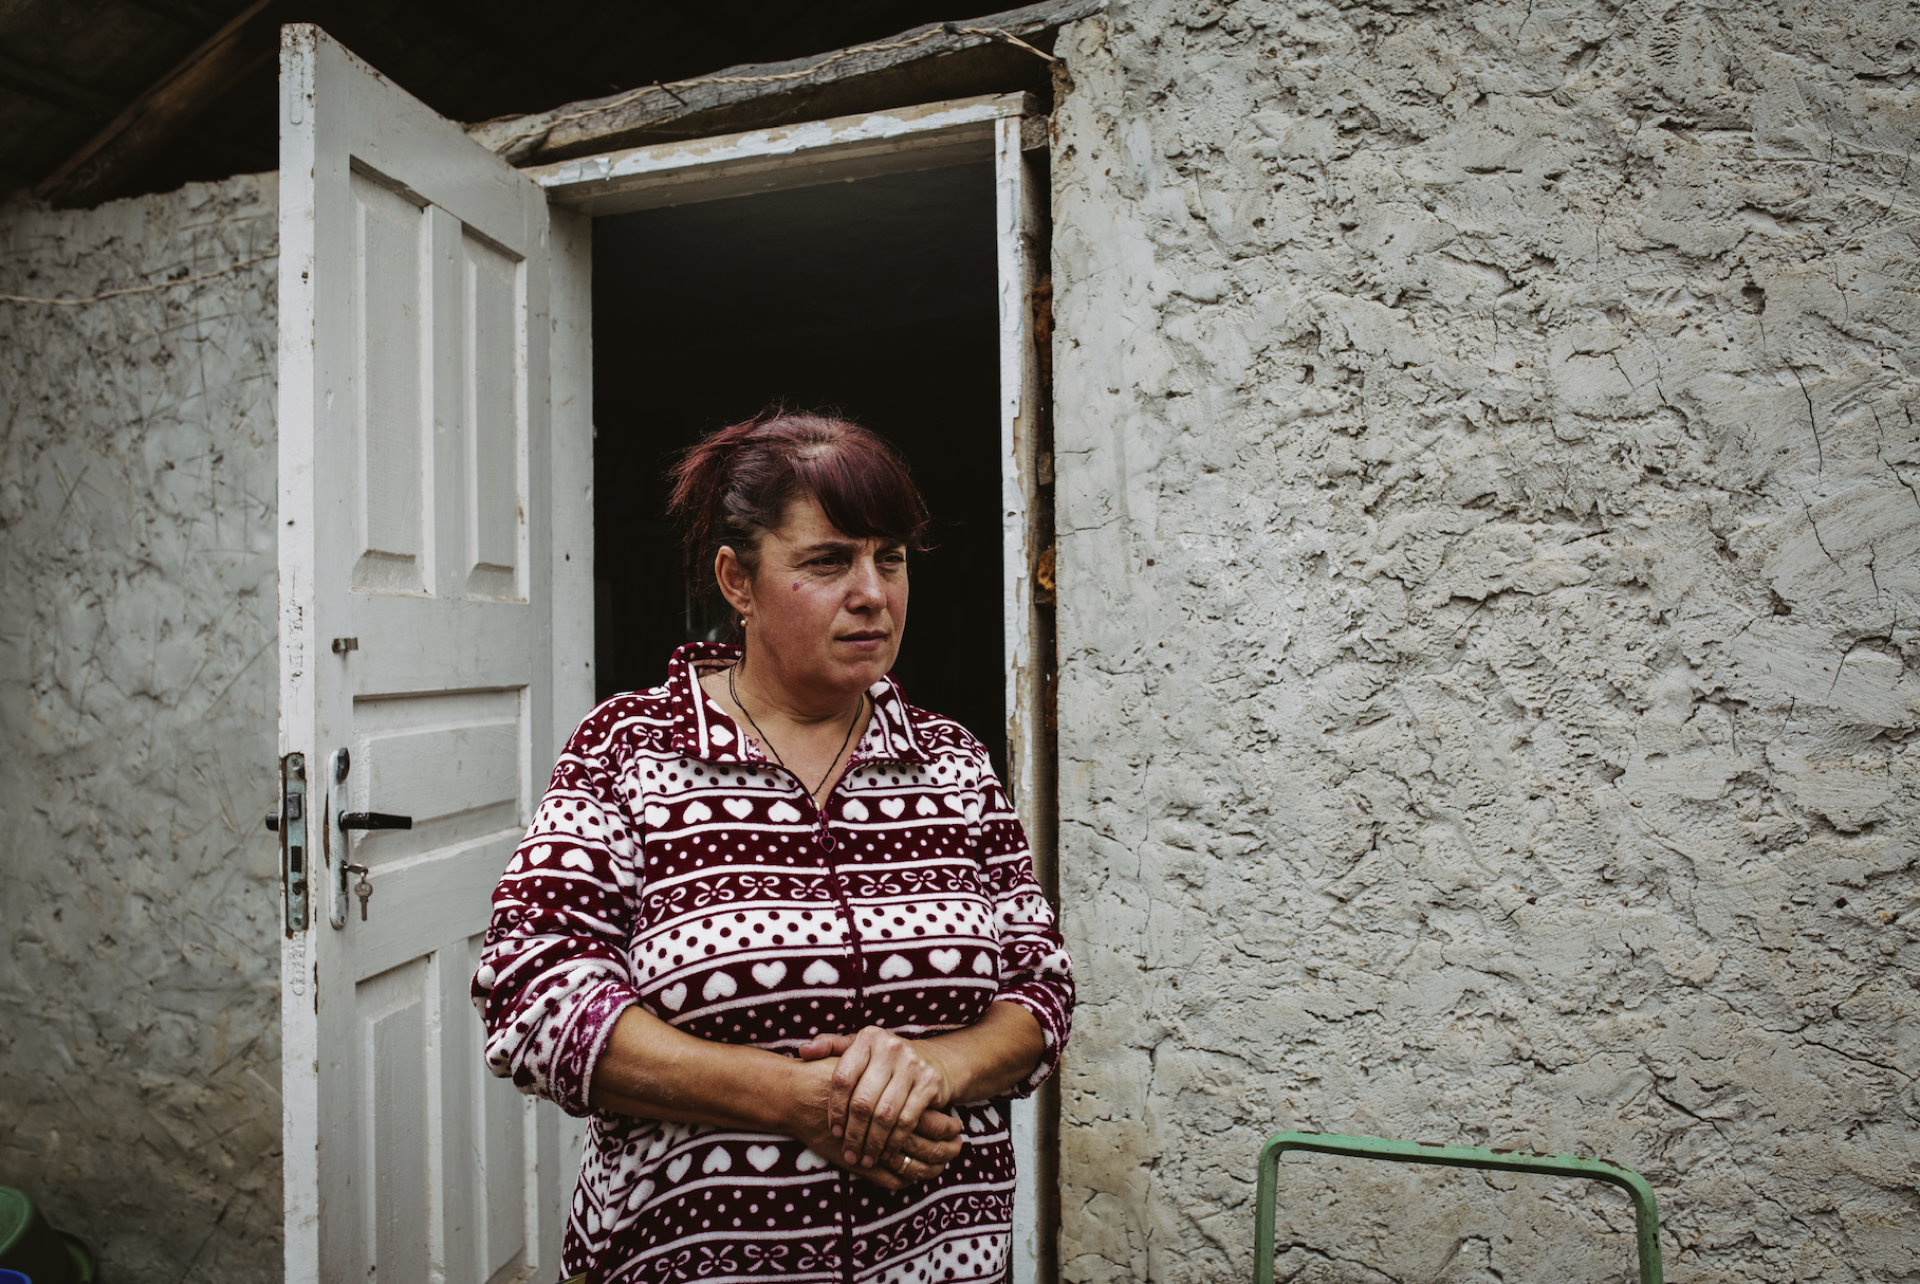 Ukrainian woman standing in doorway